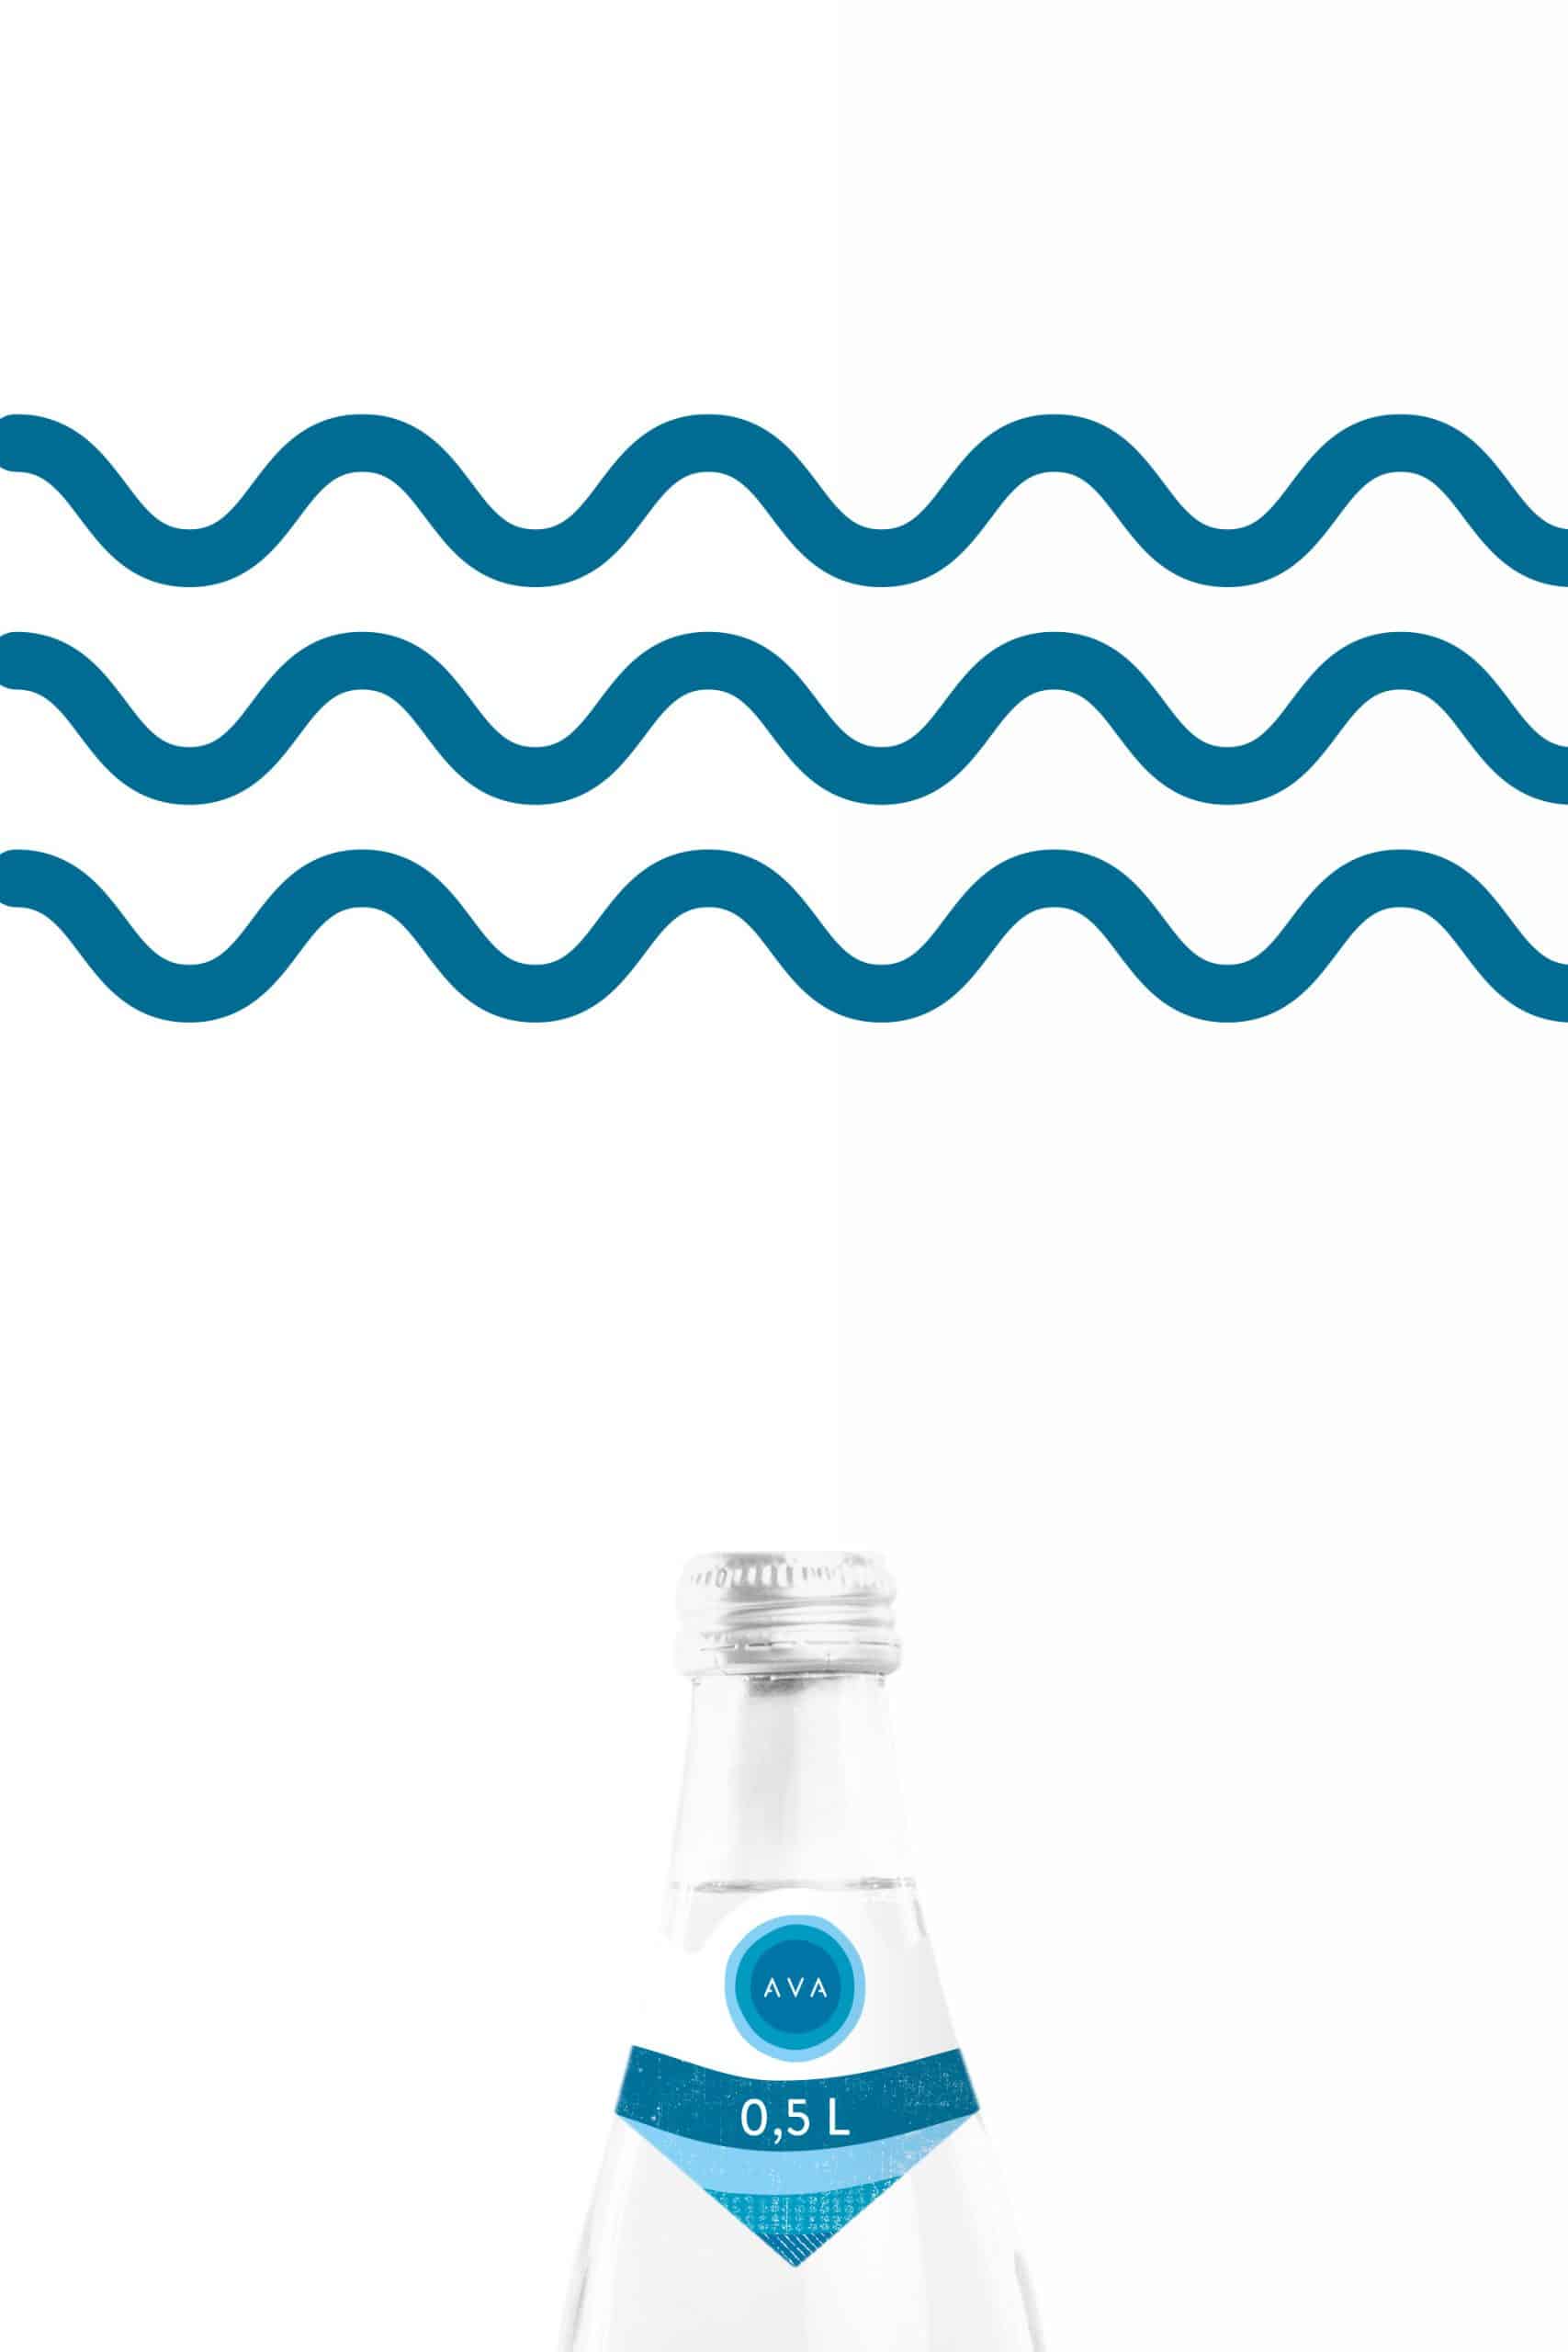 Zehndreizehn-AVA-Minerlawasser-Brand-Design